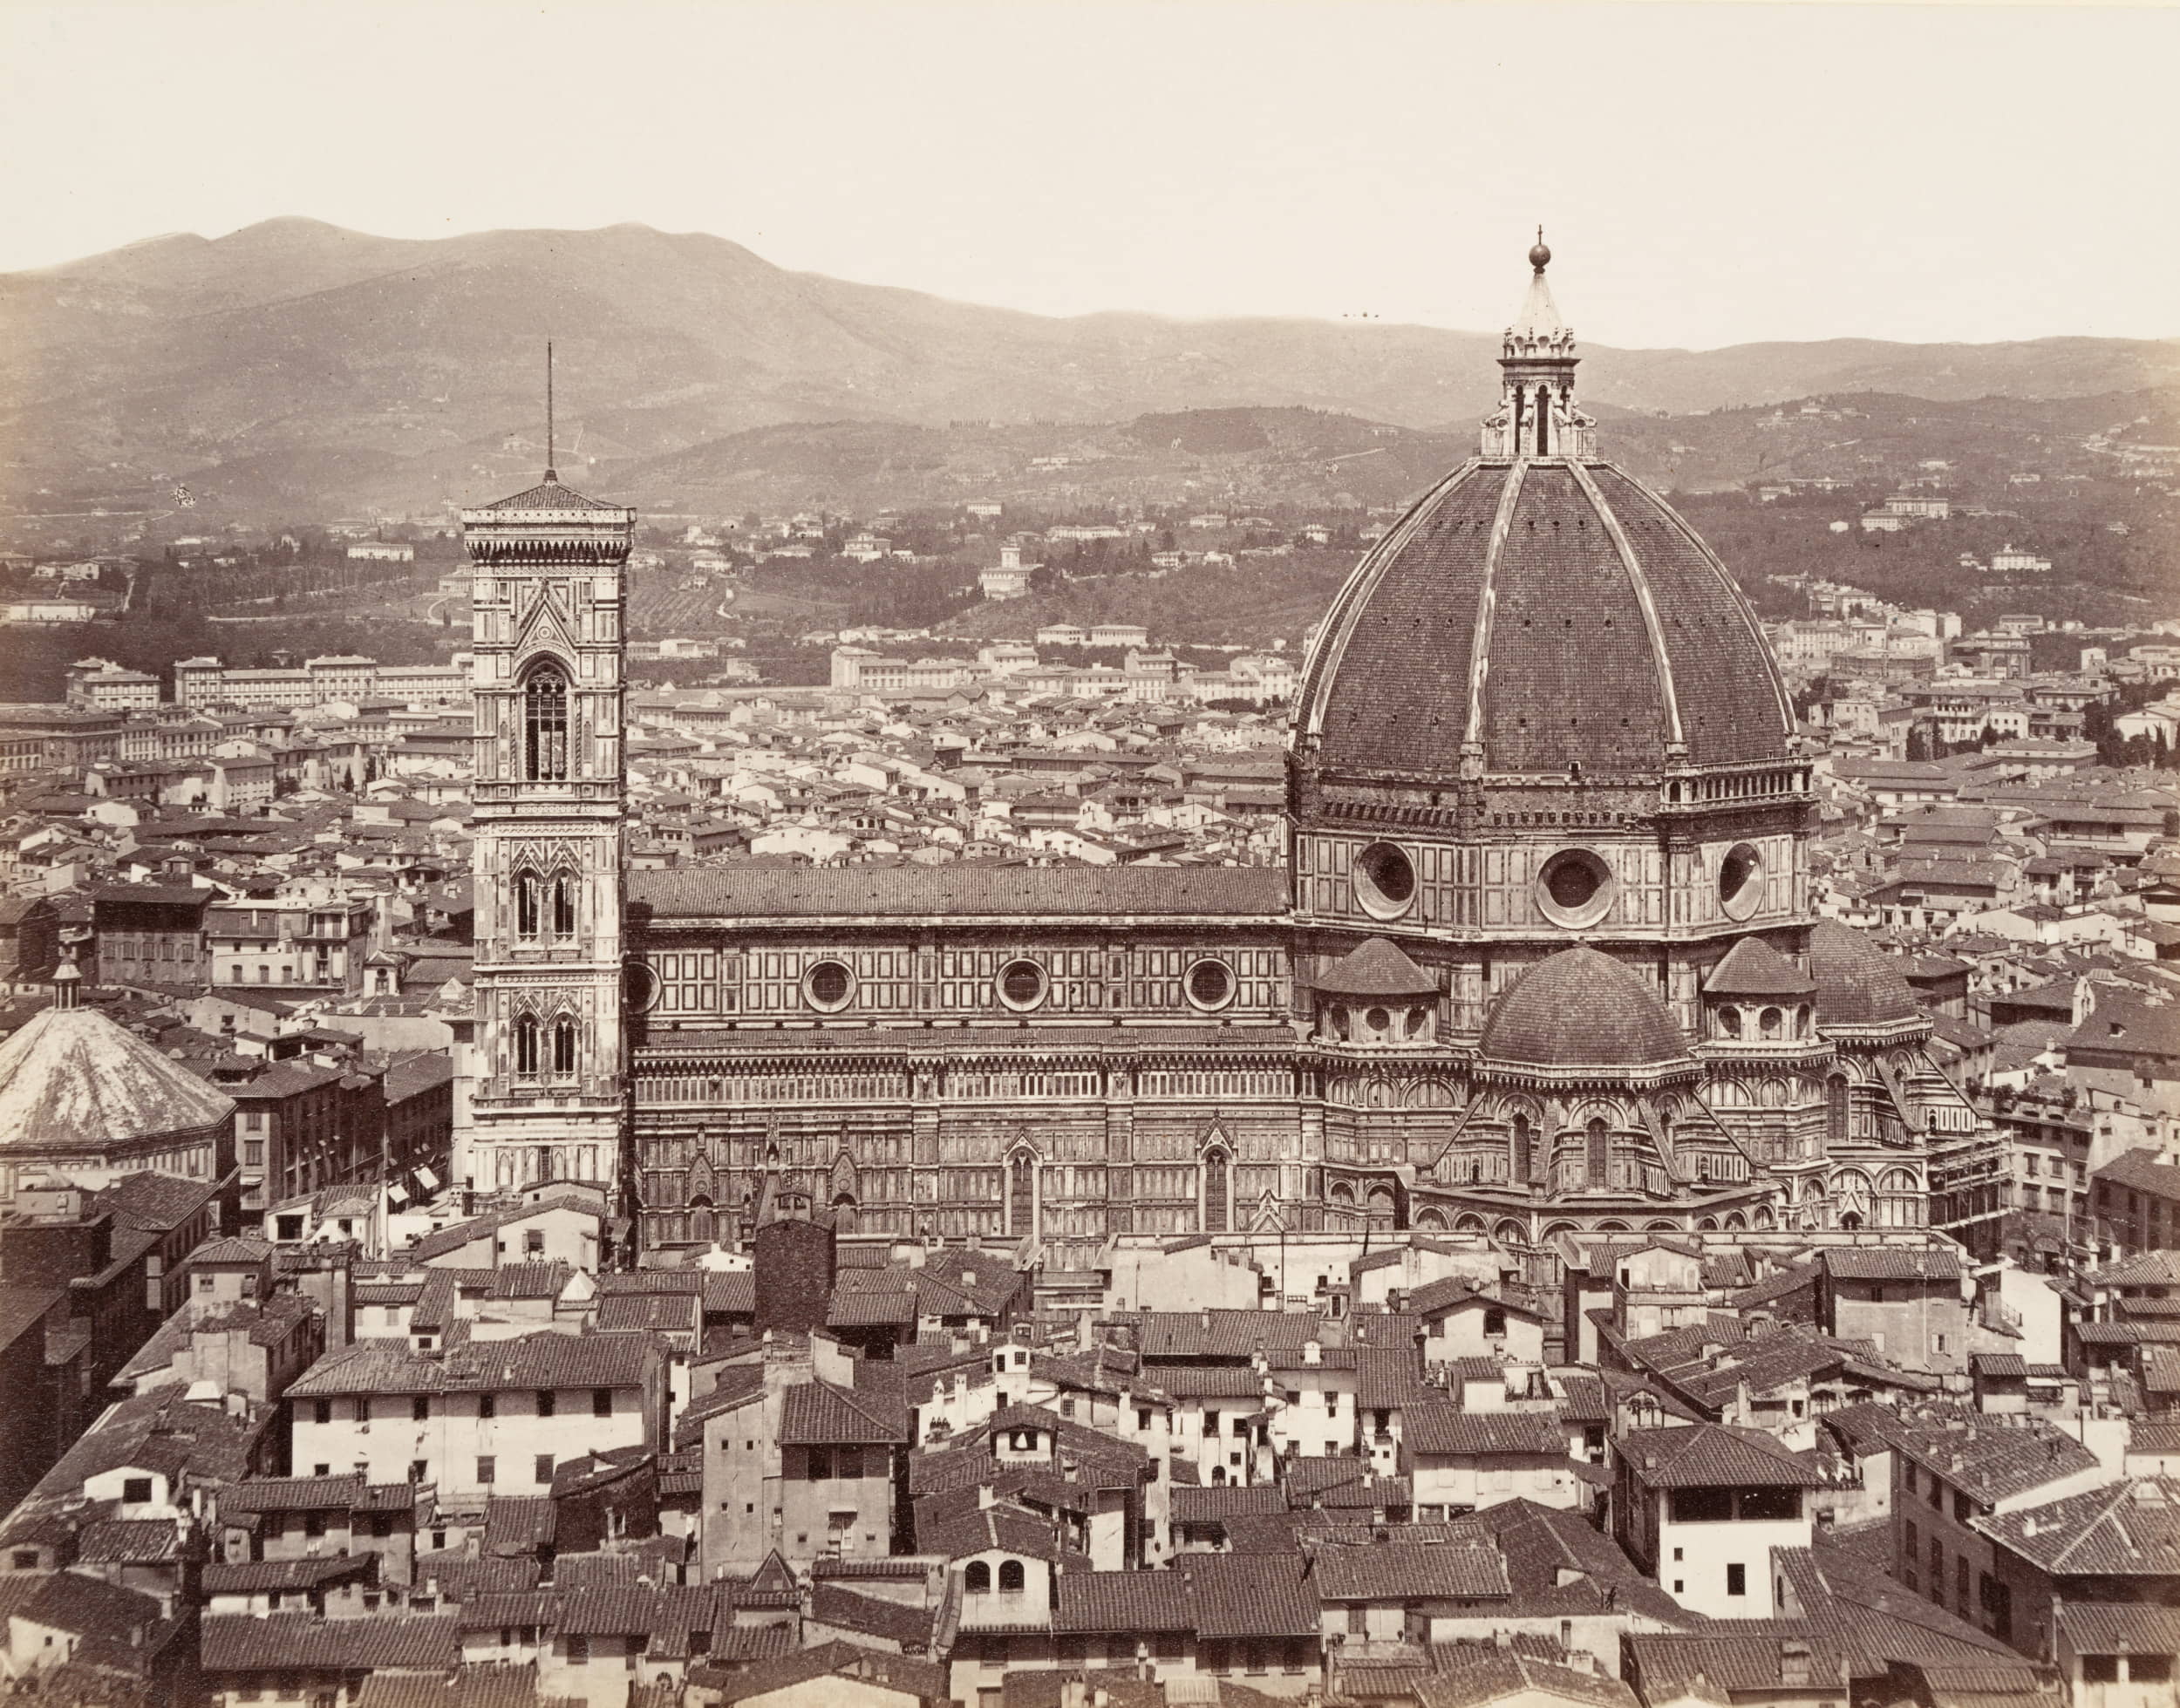 Dom, Duomo, Florenz